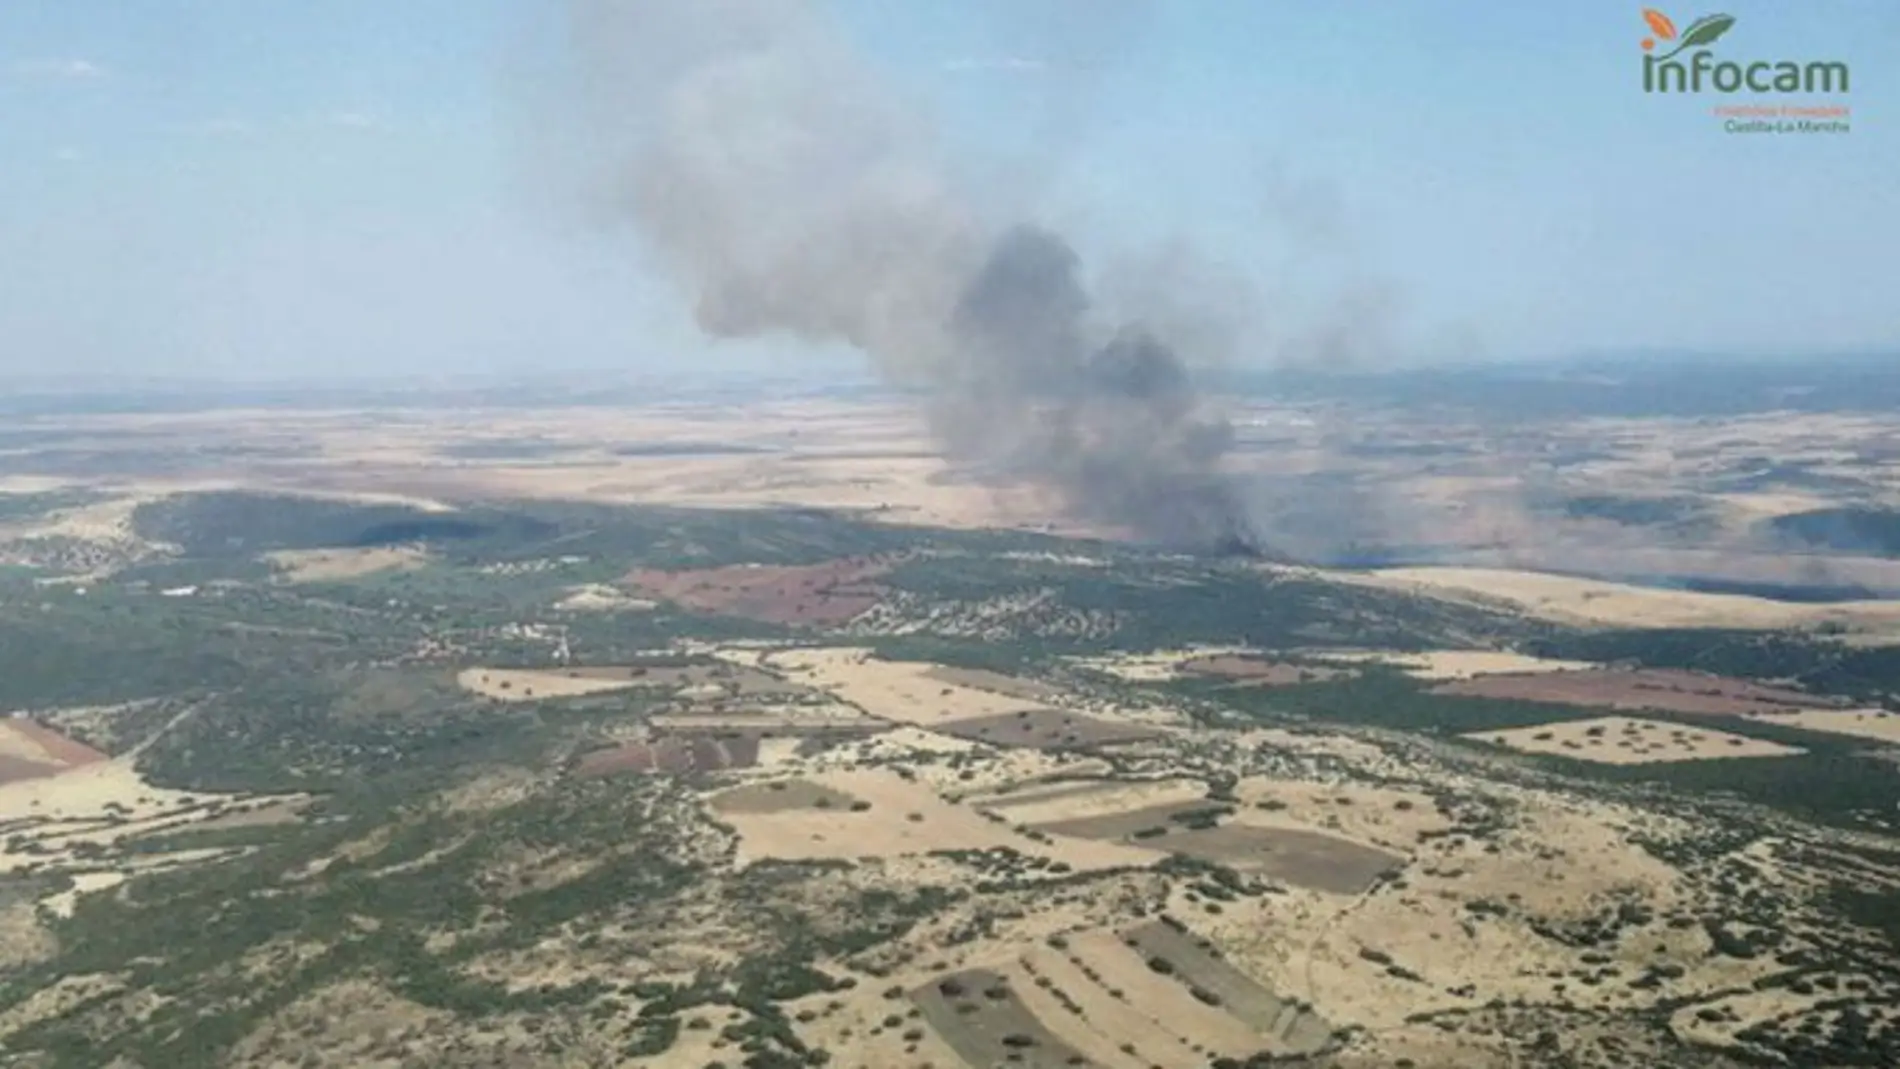 Imagen aérea del incendio agrícola de Corral de Calatrava